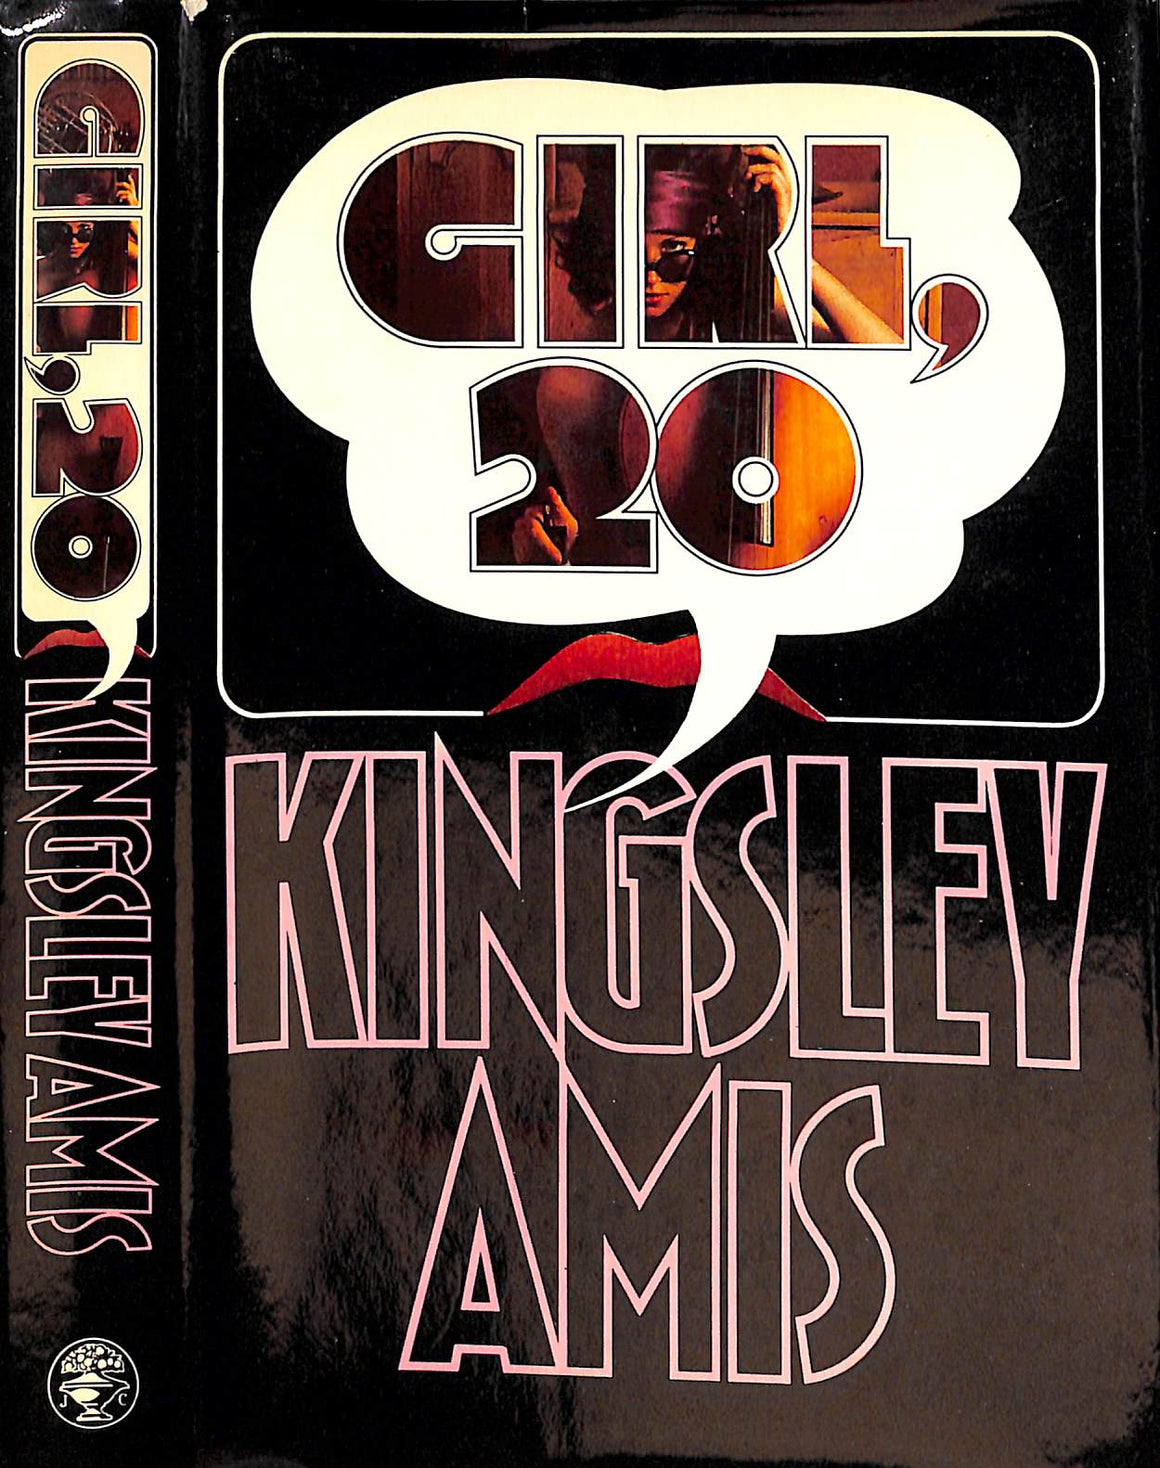 "Girl, 20" 1971 AMIS, Kingsley